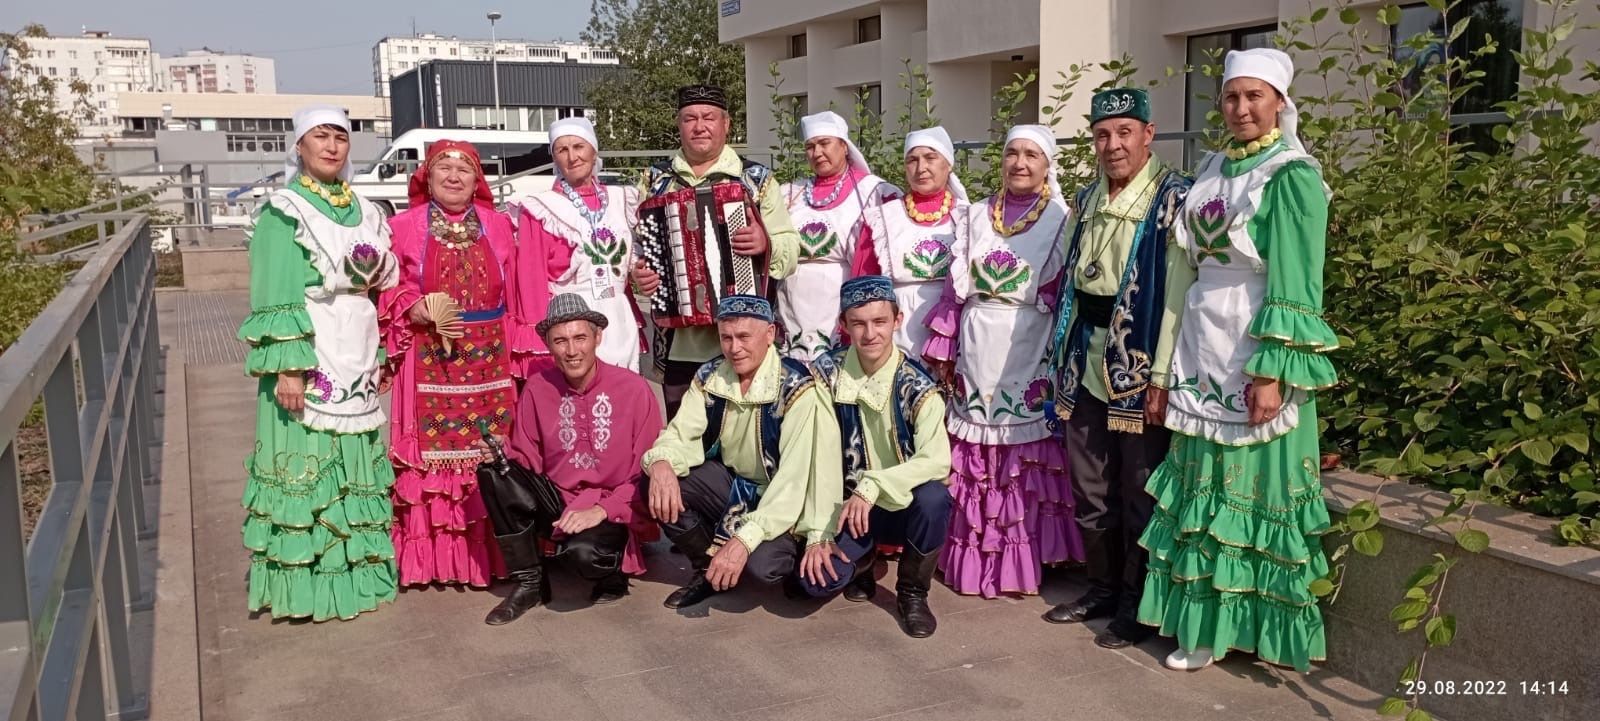 Фольклорные коллективы Бугульминского района стали лауреатами Всероссийского фестиваля «Түгәрәк уен»